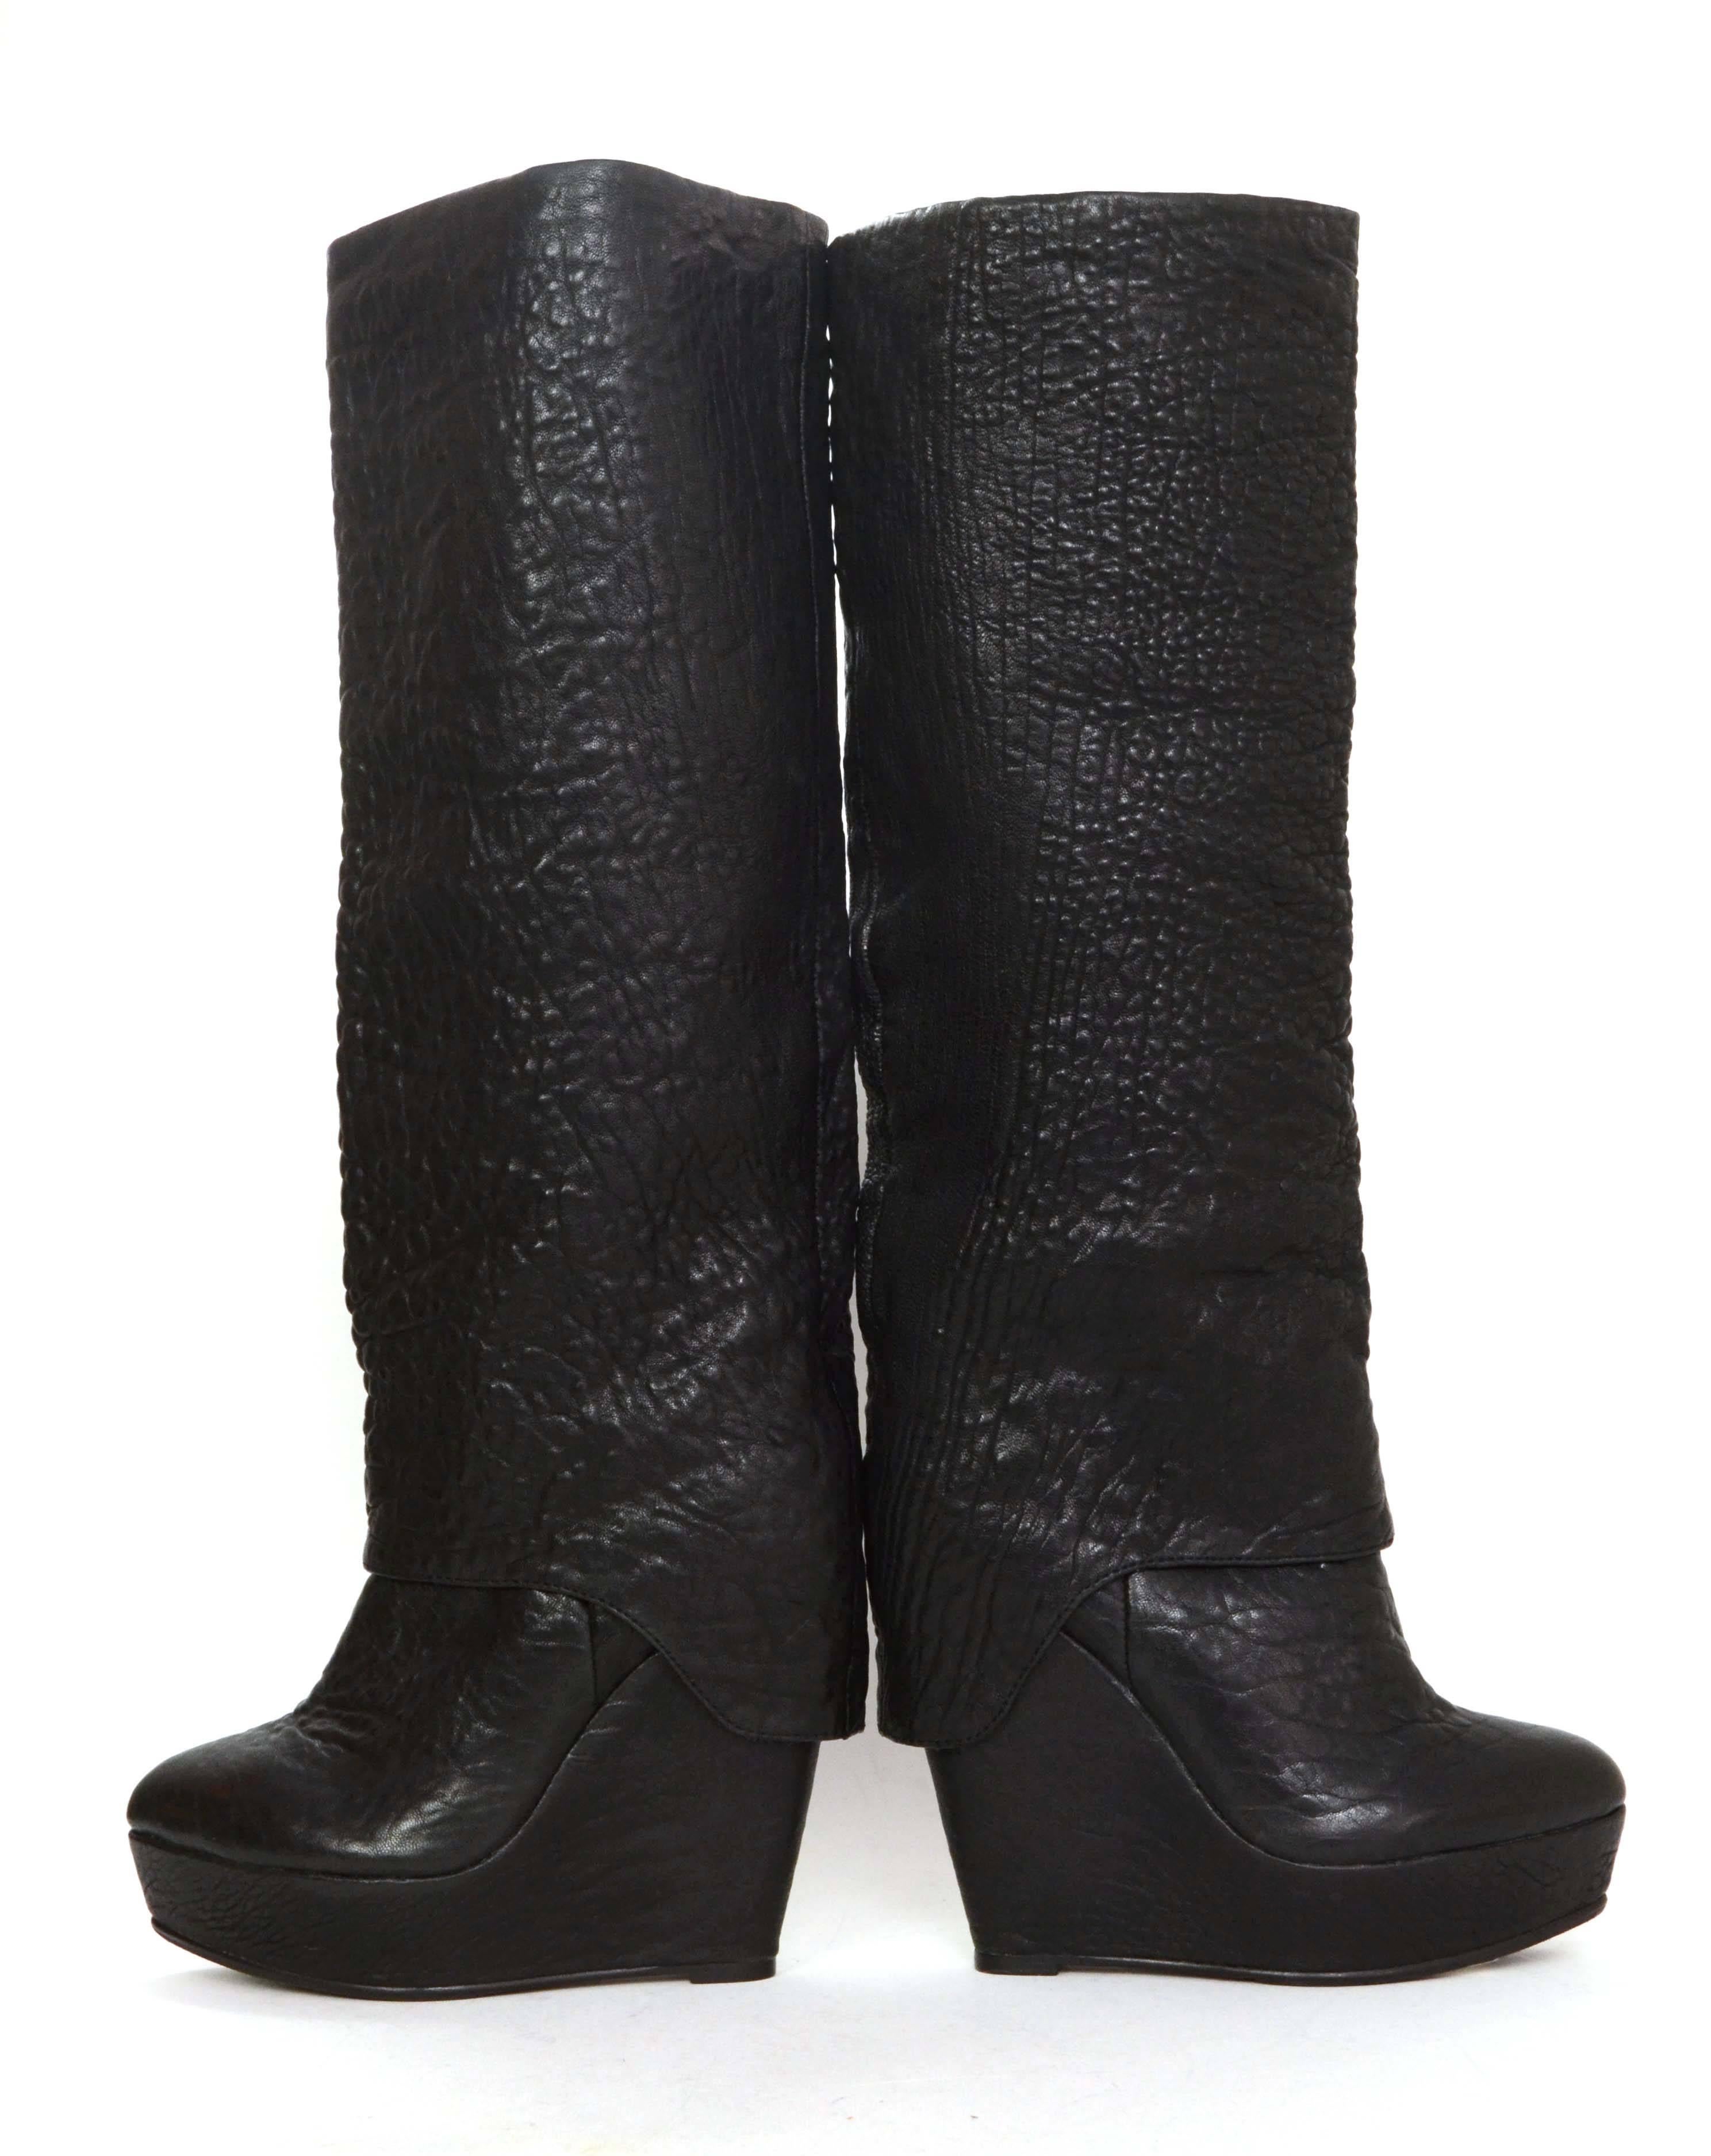 Elizabeth and James Black Pebbled Leather Platform Wedge Boots sz 6.5 2